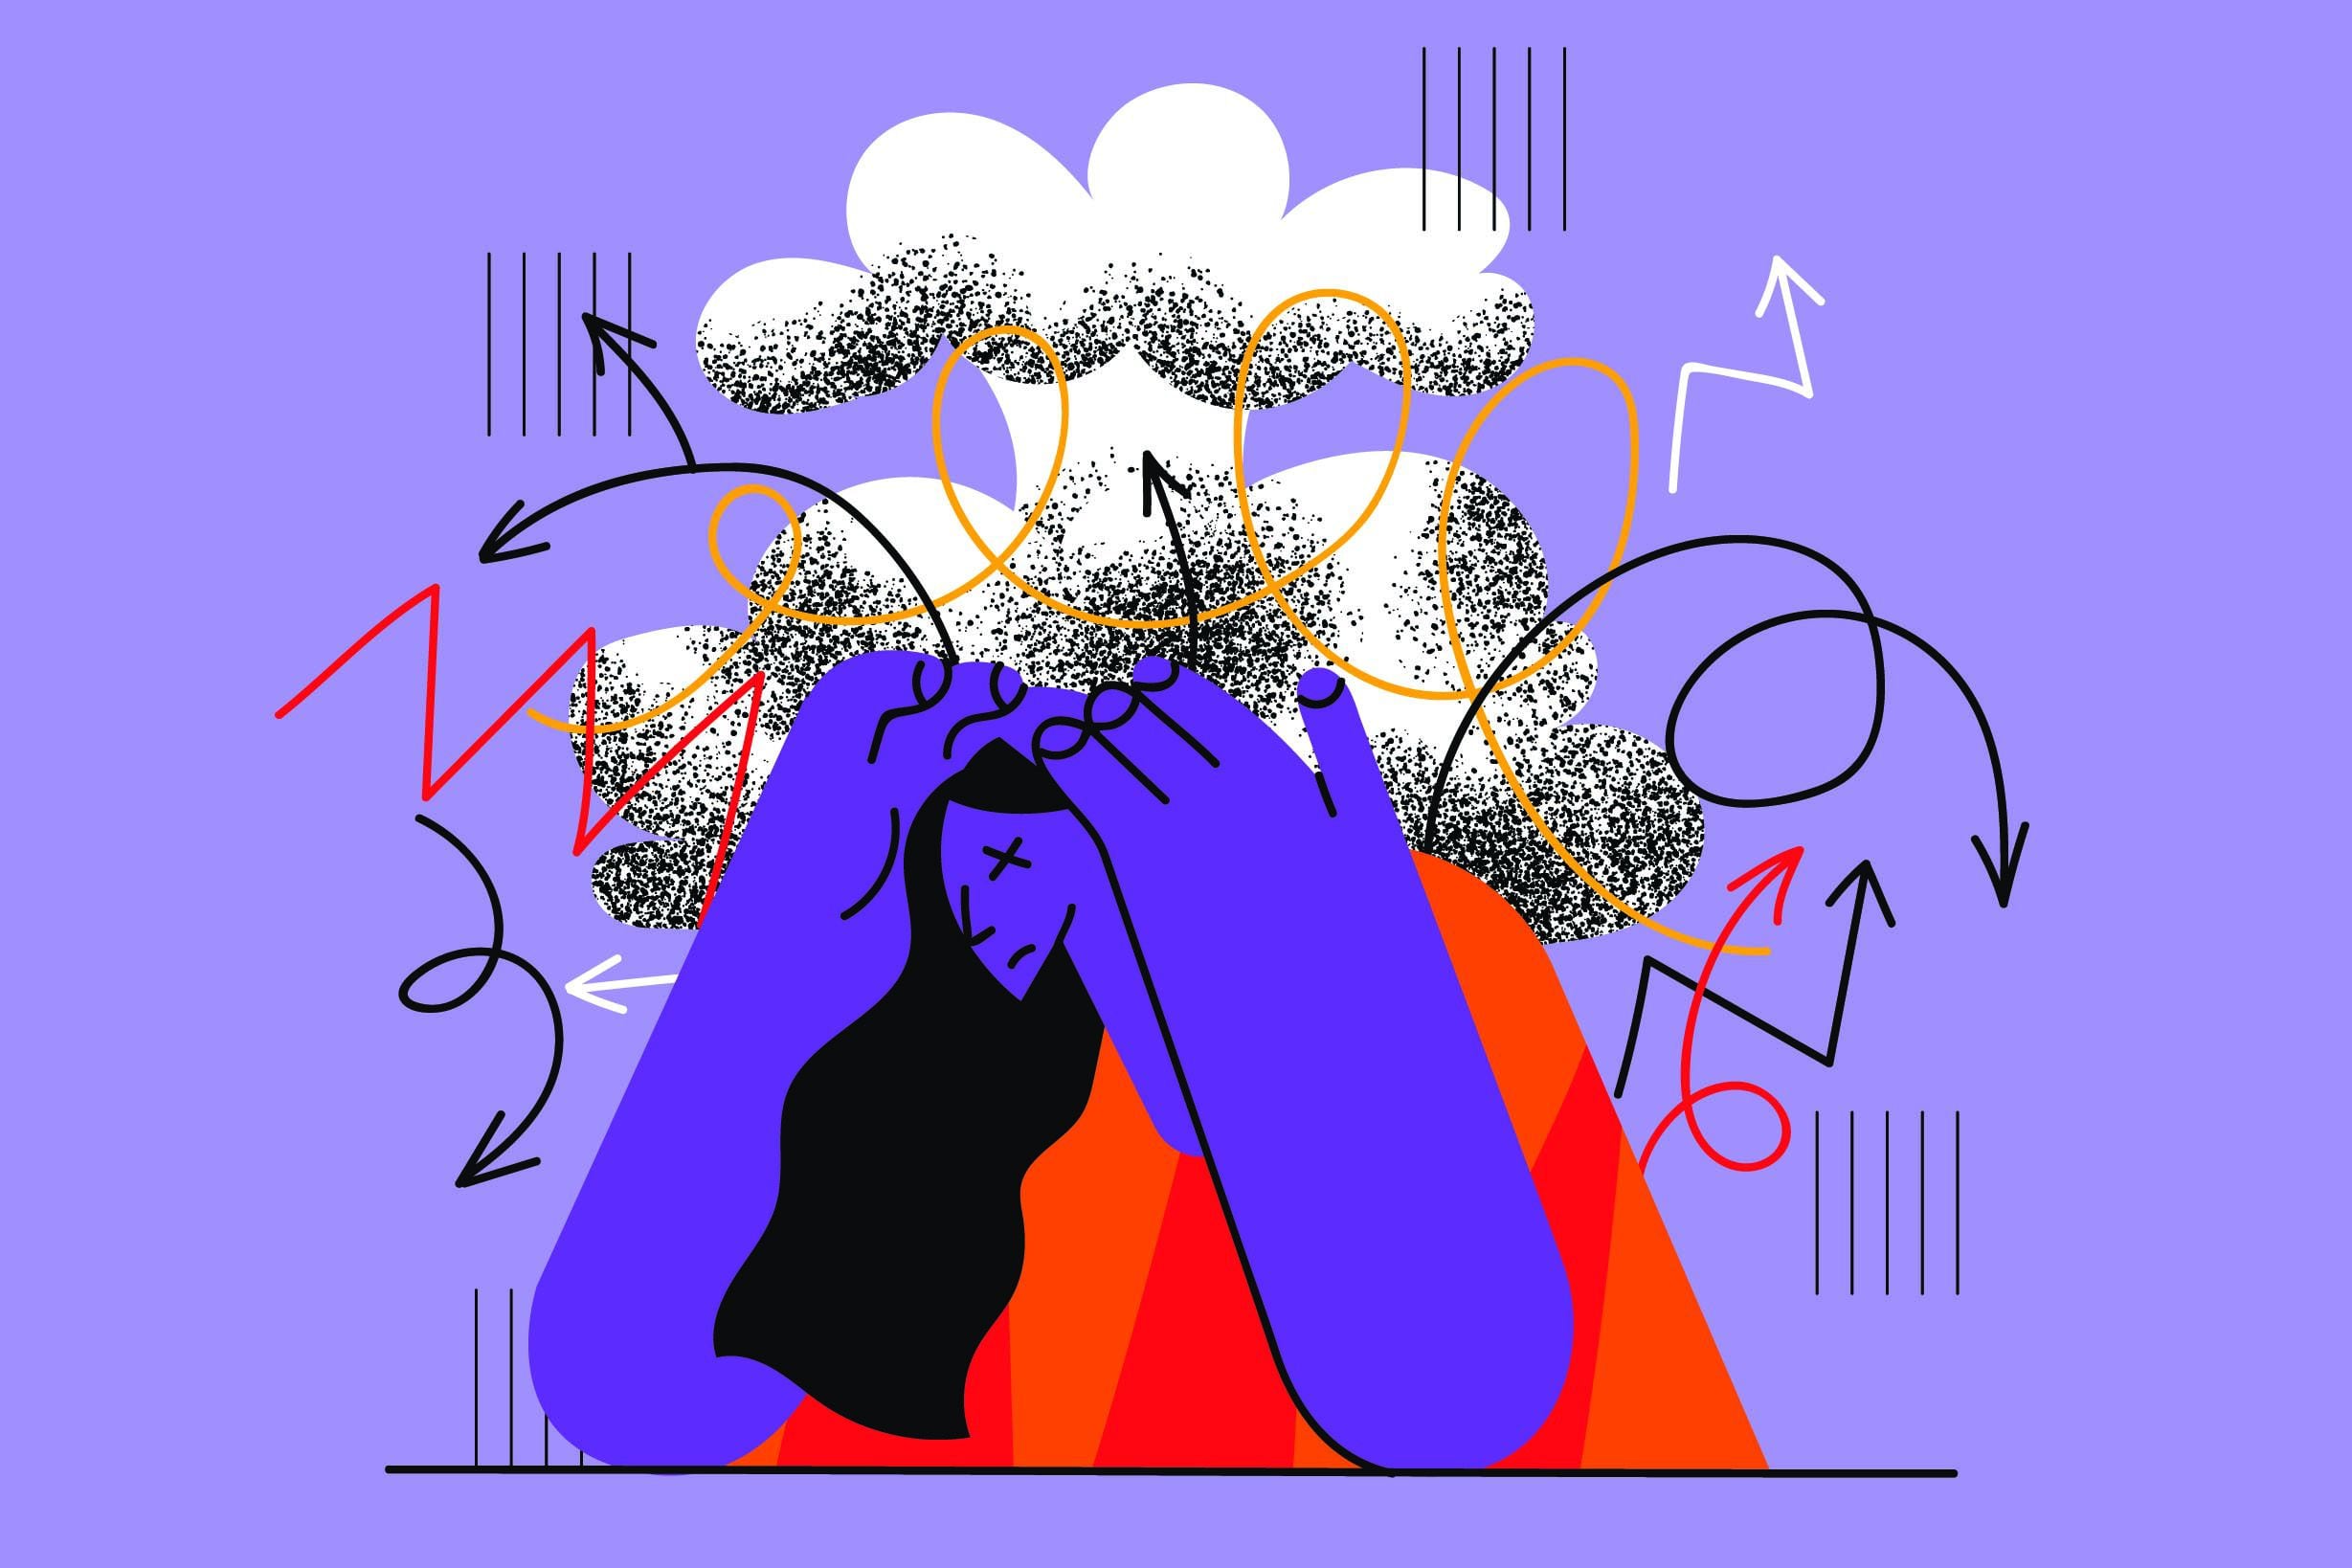 Las mujeres son quienes más tienen problemas de migrañas y otros dolores de cabeza.

Ilustración: Shutterstock